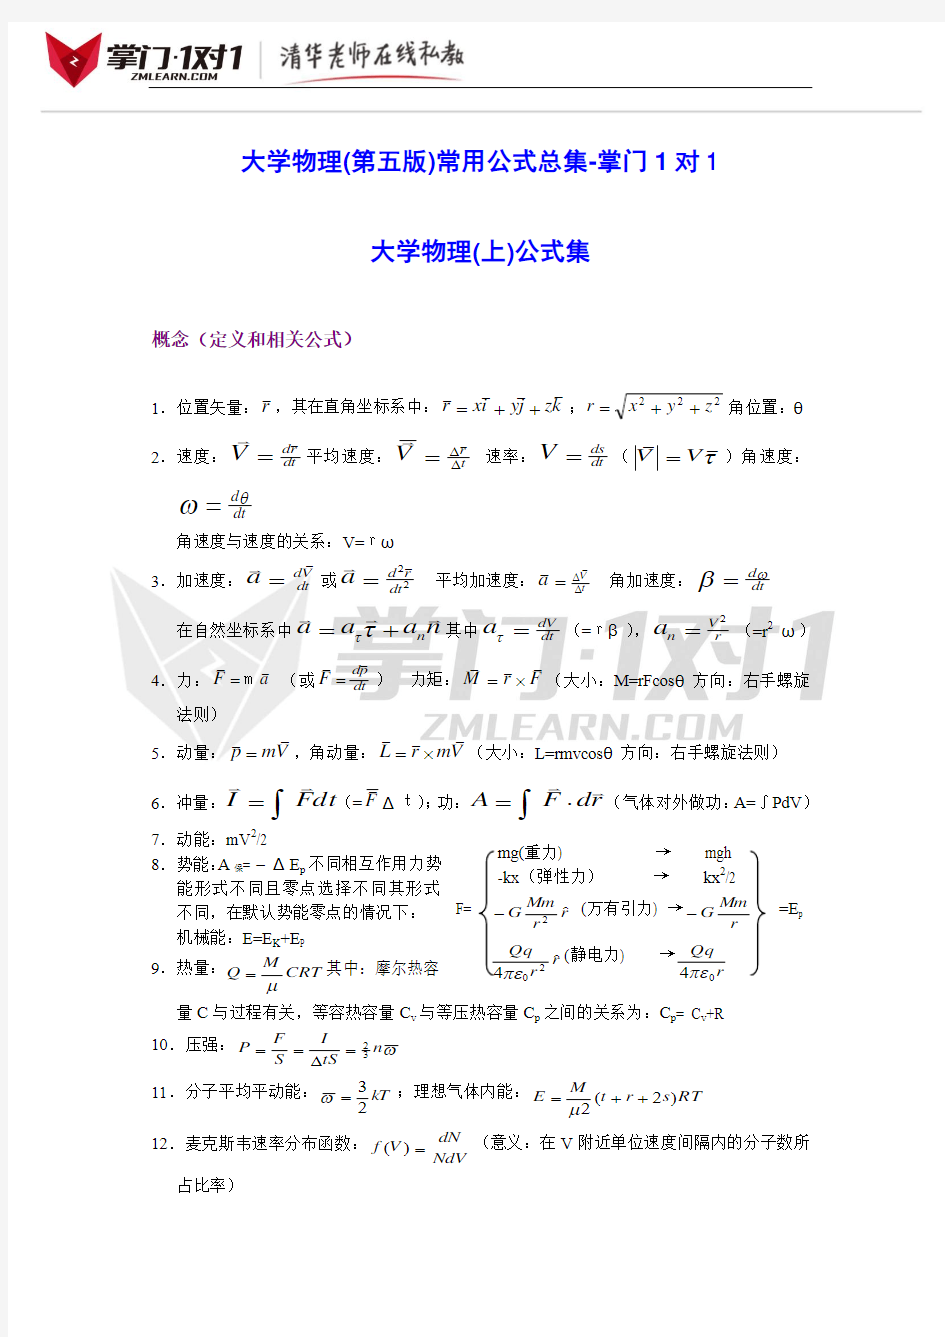 大学物理(第五版)常用公式总集-掌门1对1